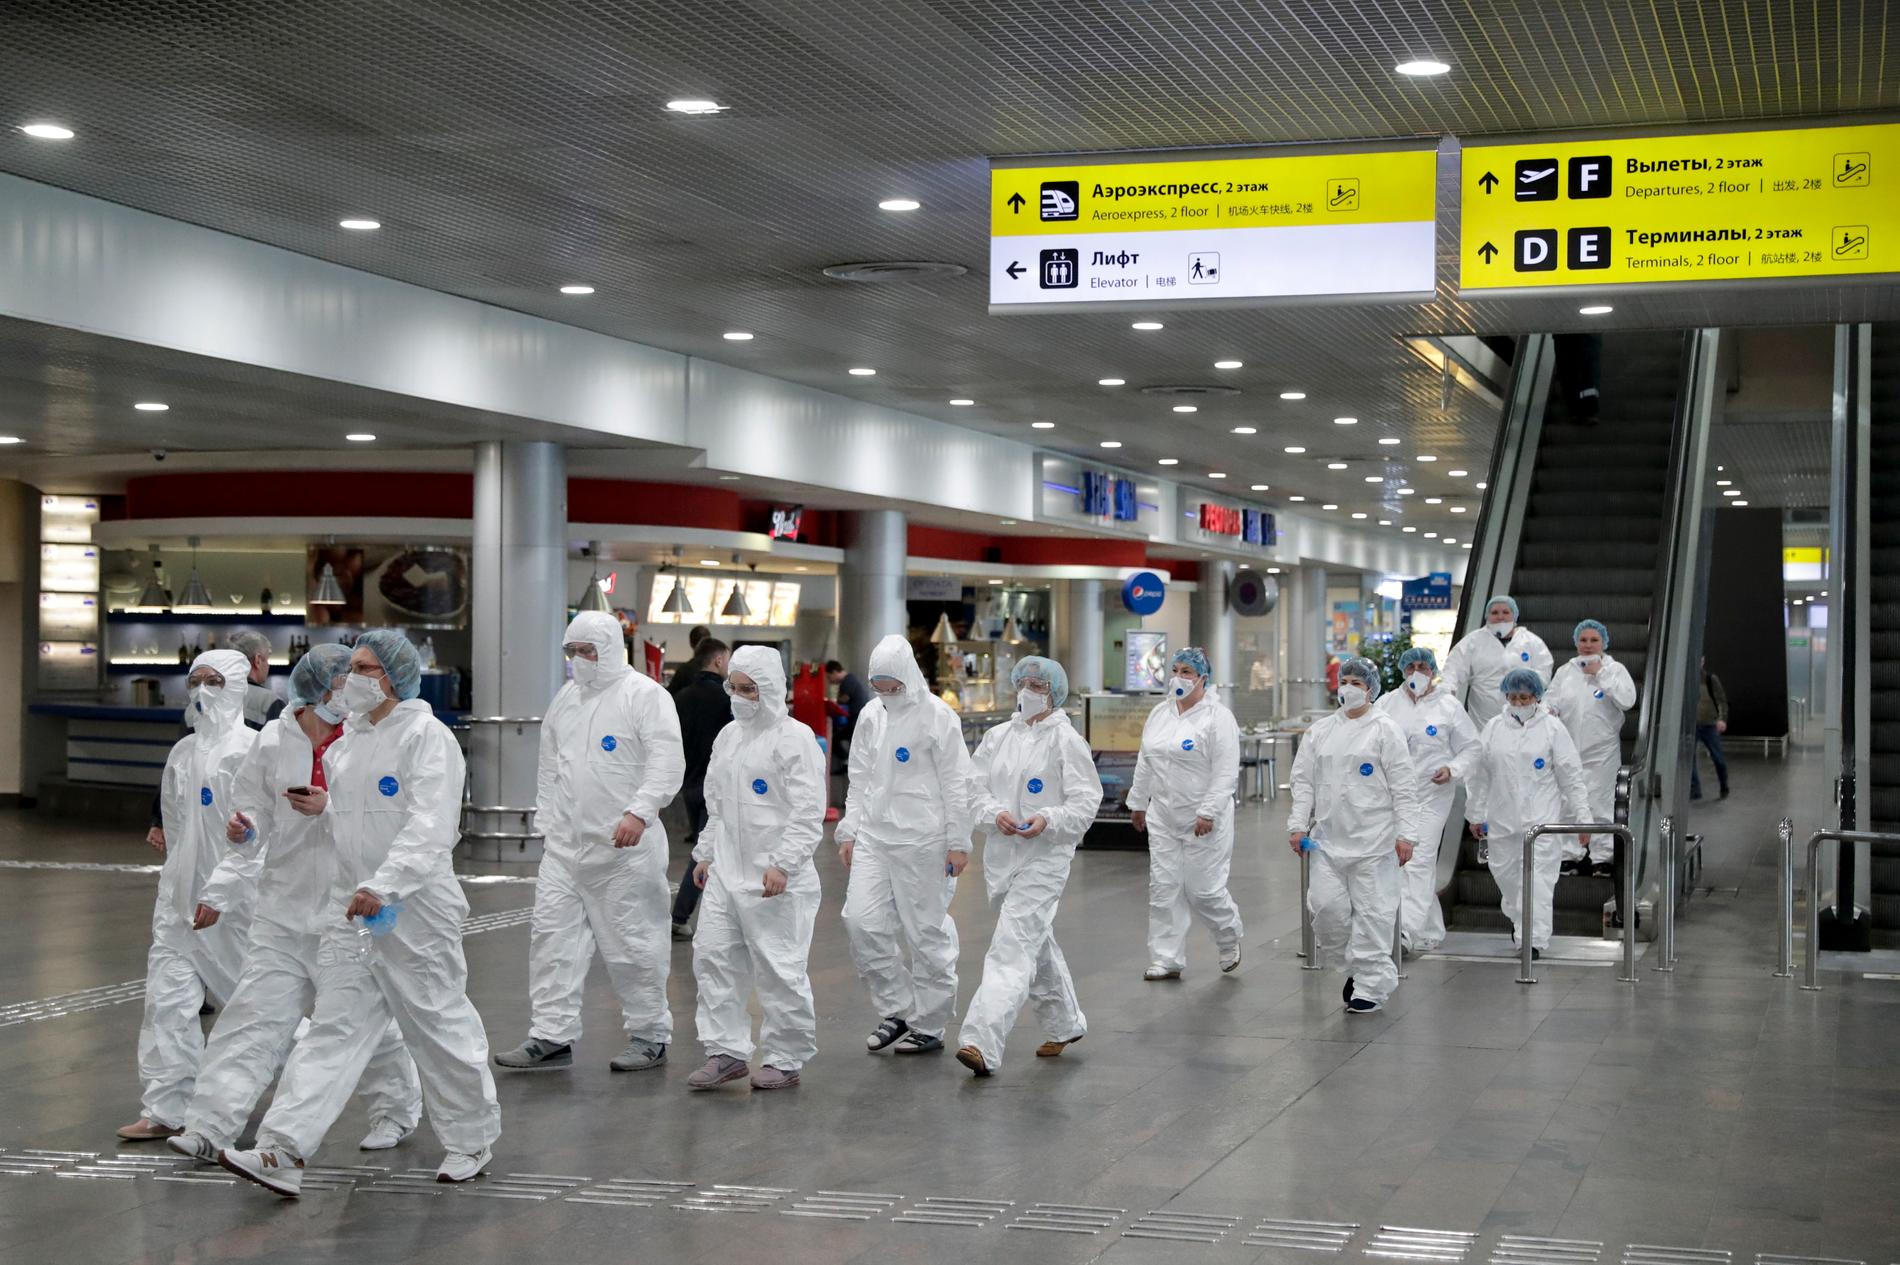 Ryska vårdarbetare på väg för att kontrollera resenärer som anlänt från utlandet vid Sjeremetevos internationella flygplats utanför Moskva i förra veckan.